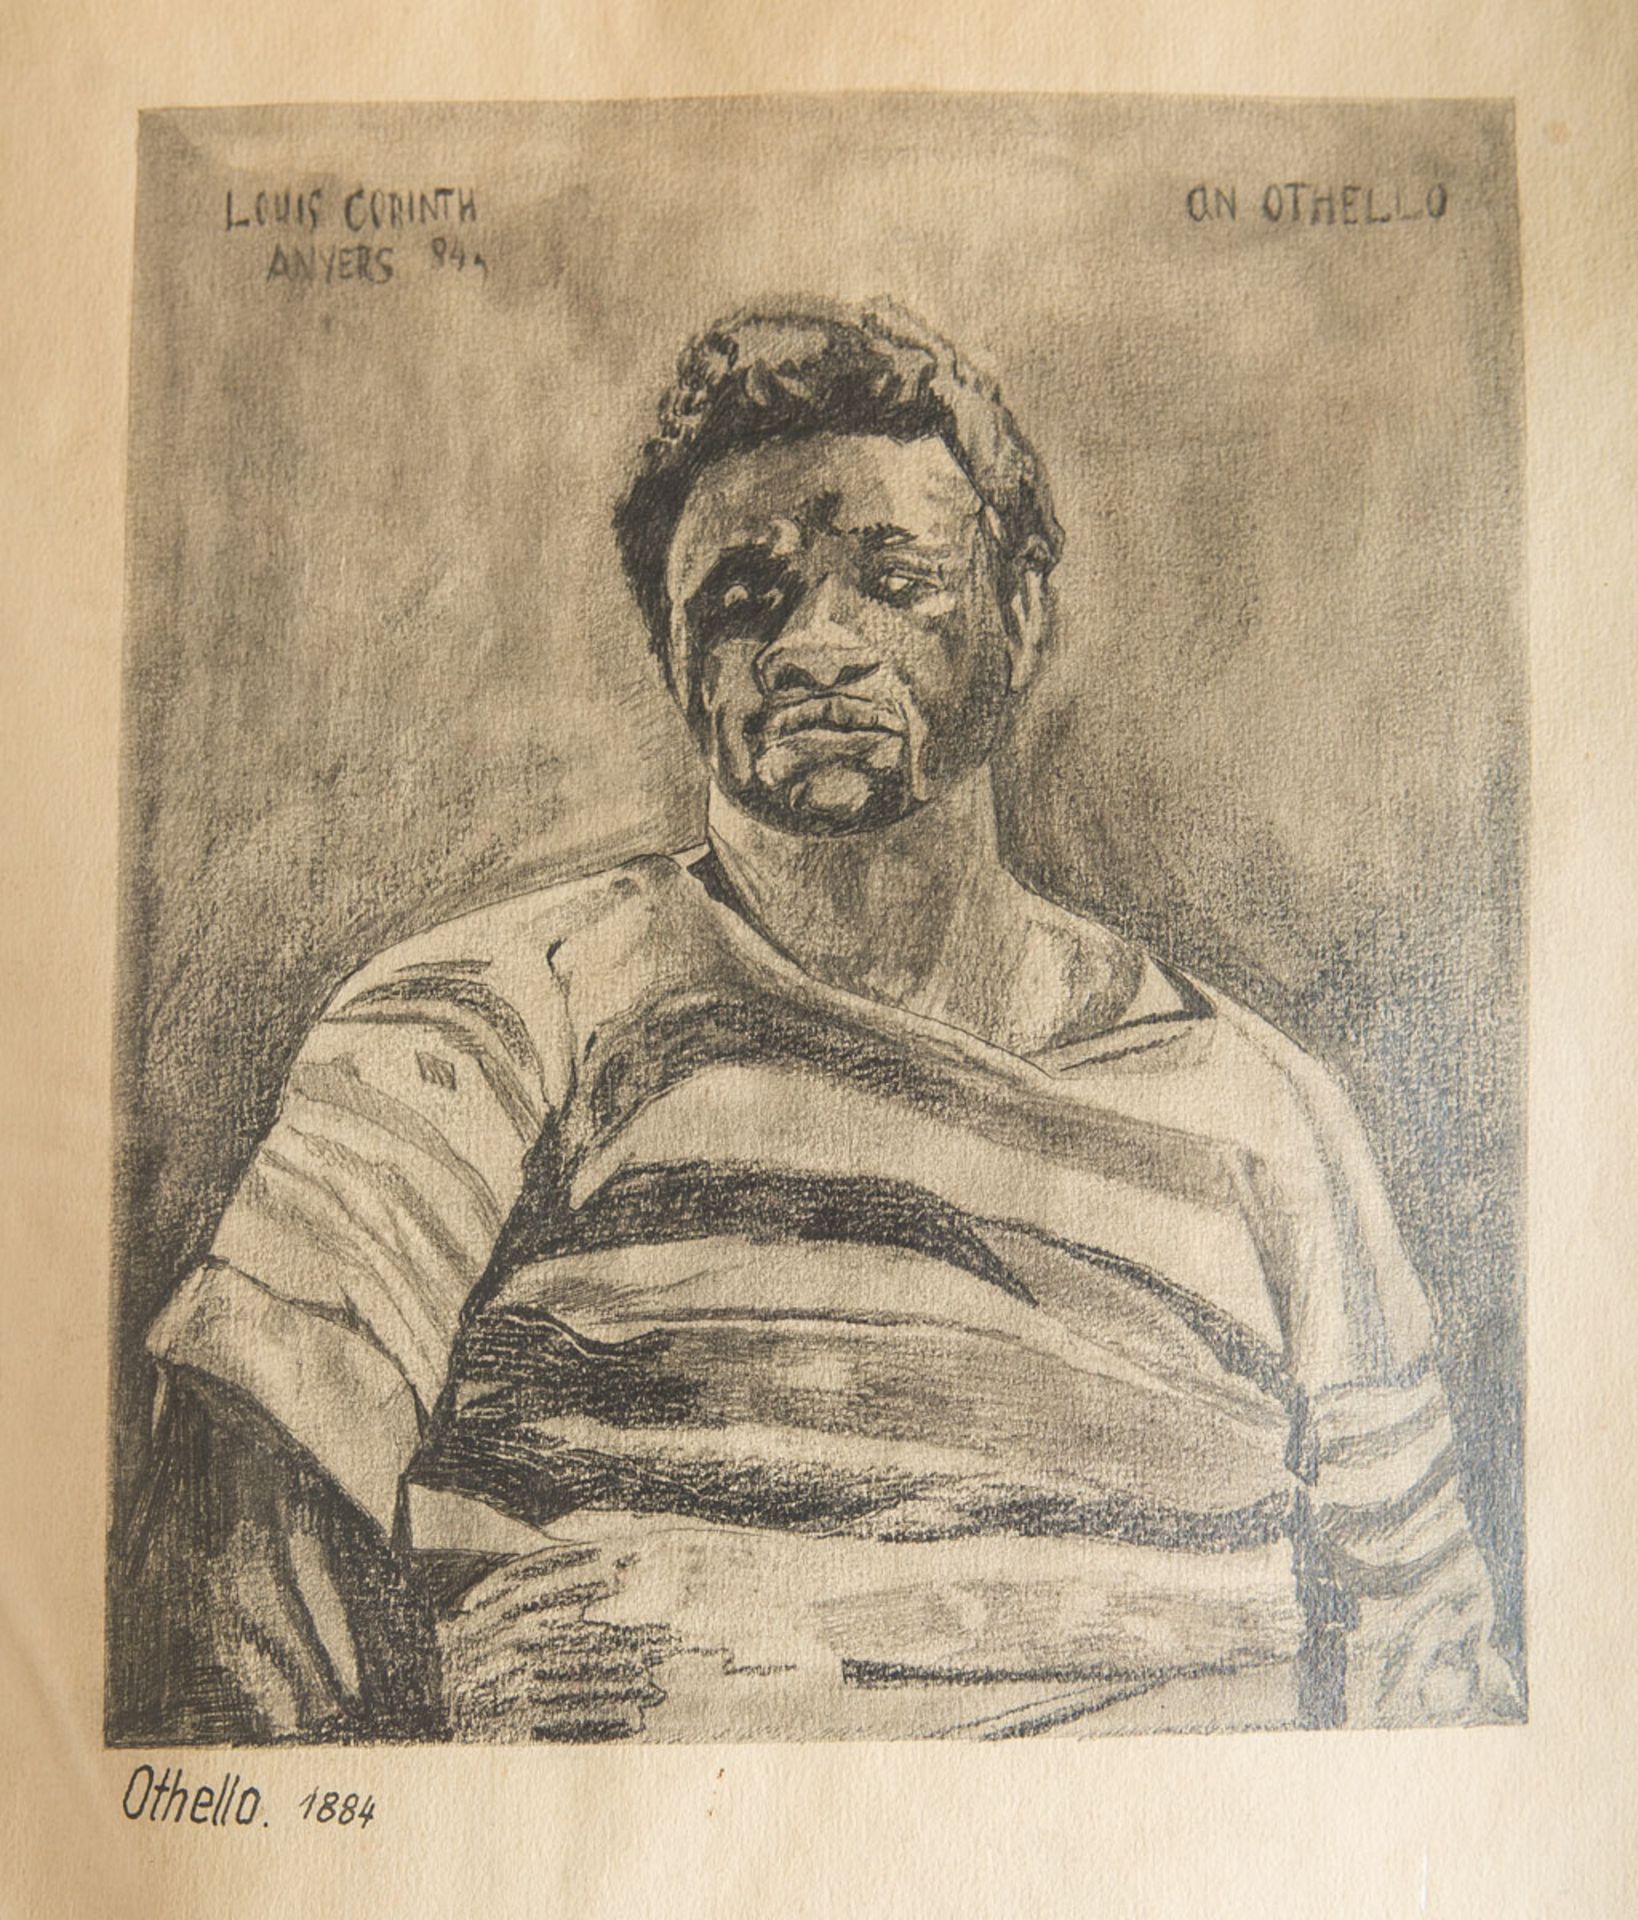 Corinth, Lovis (1858 - 1925), "Othello" (1884)